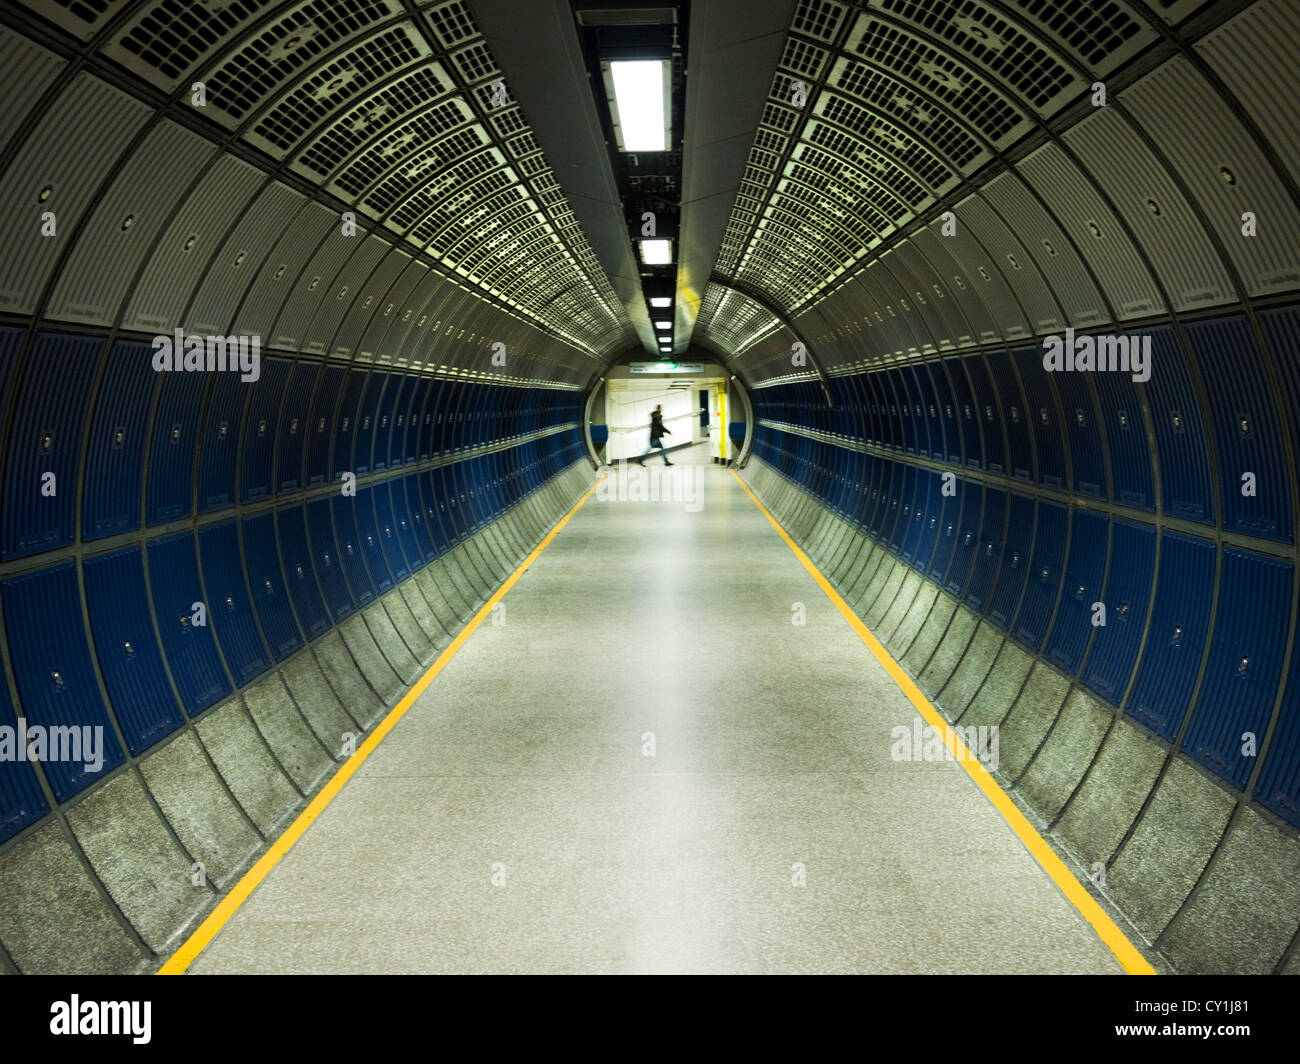 Tunnel souterrain moderne avec la figure solitaire de marcher à travers la région de distance Banque D'Images